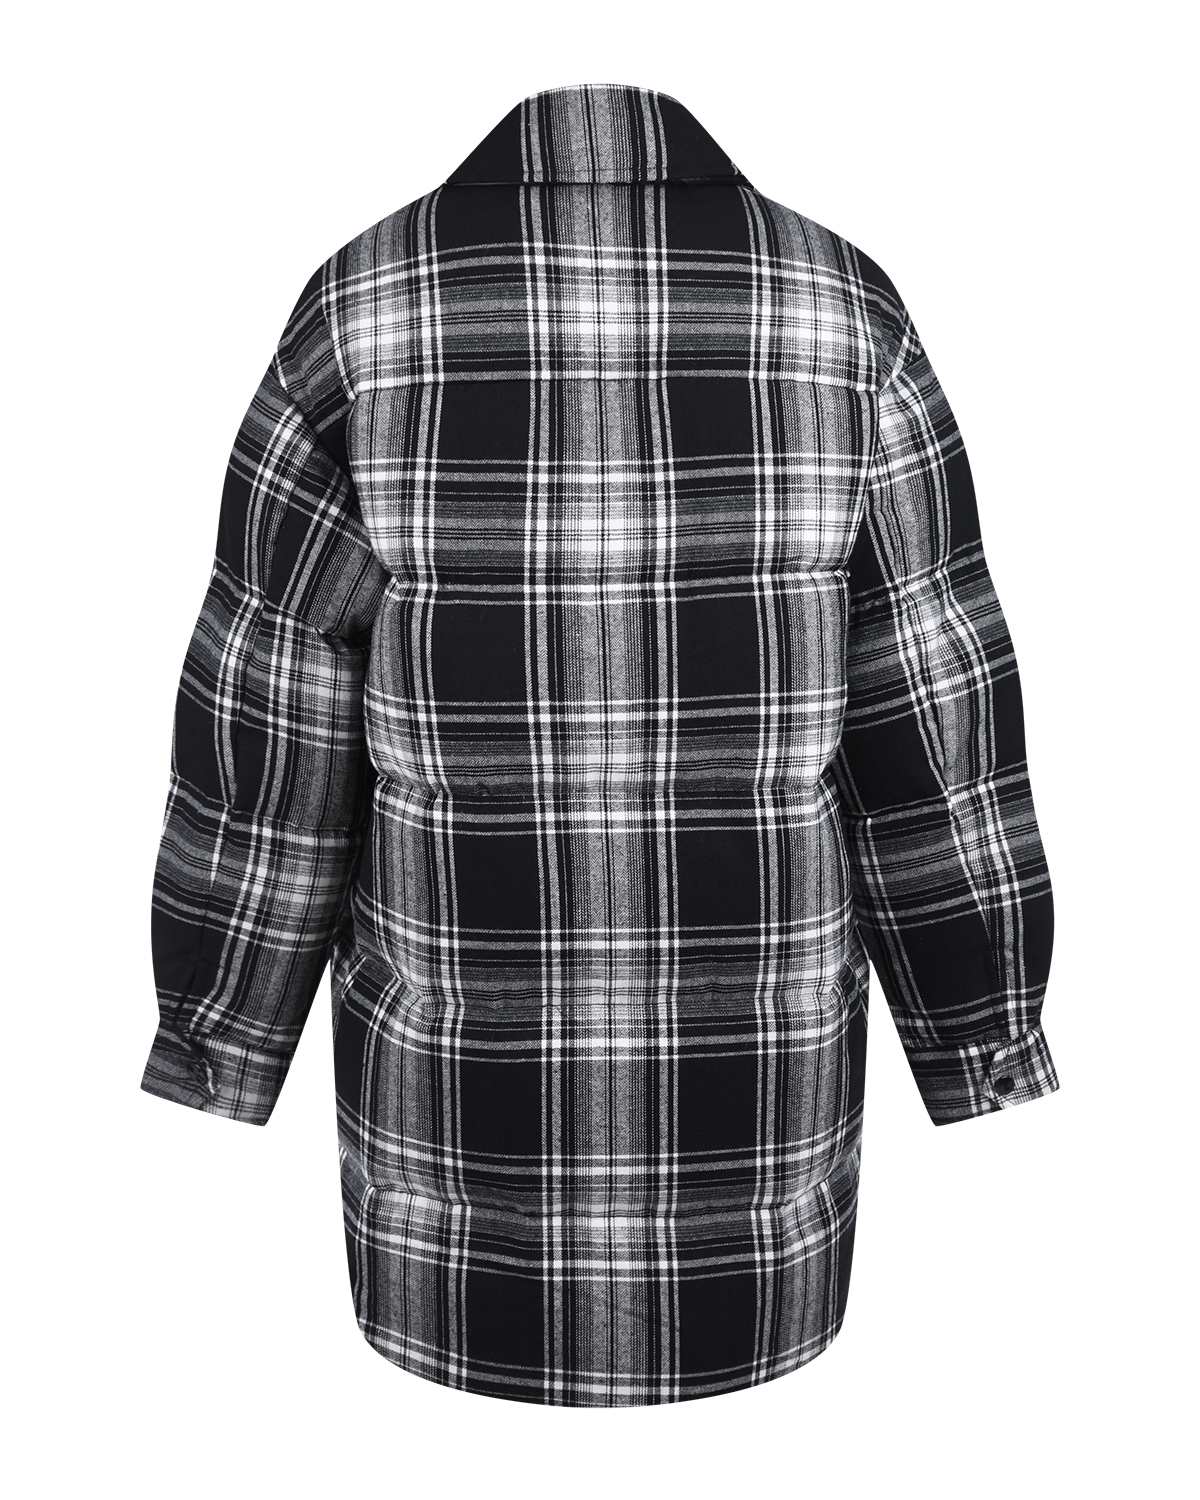 Пальто имитирующее рубашку в клетку Parosh, размер 42, цвет черный - фото 5